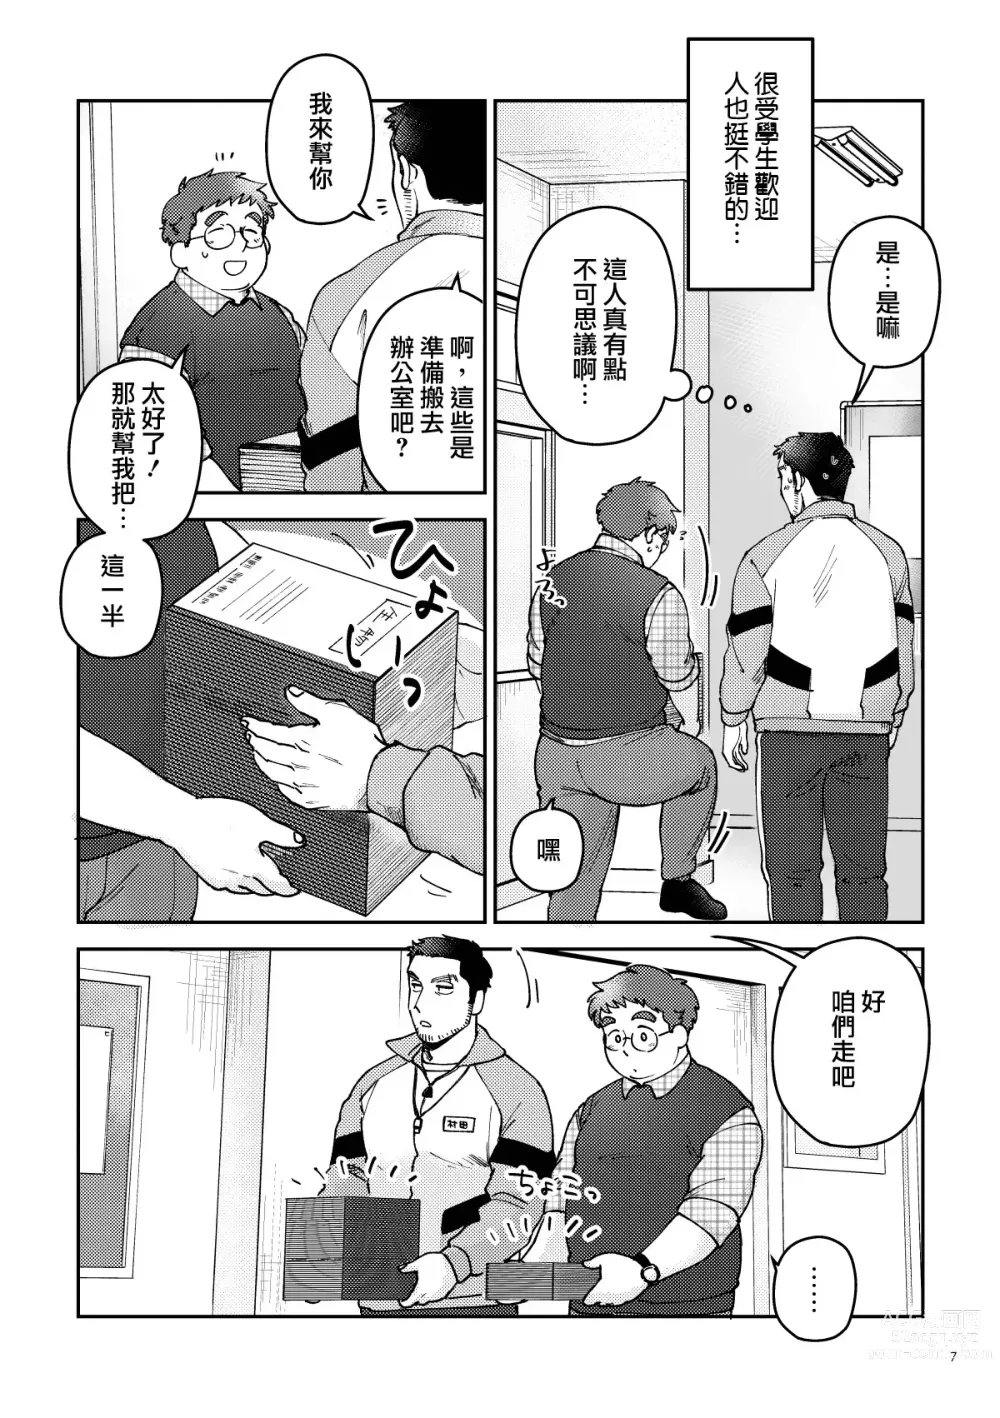 Page 7 of manga はいよろこんでのれイメージギャップハートビート